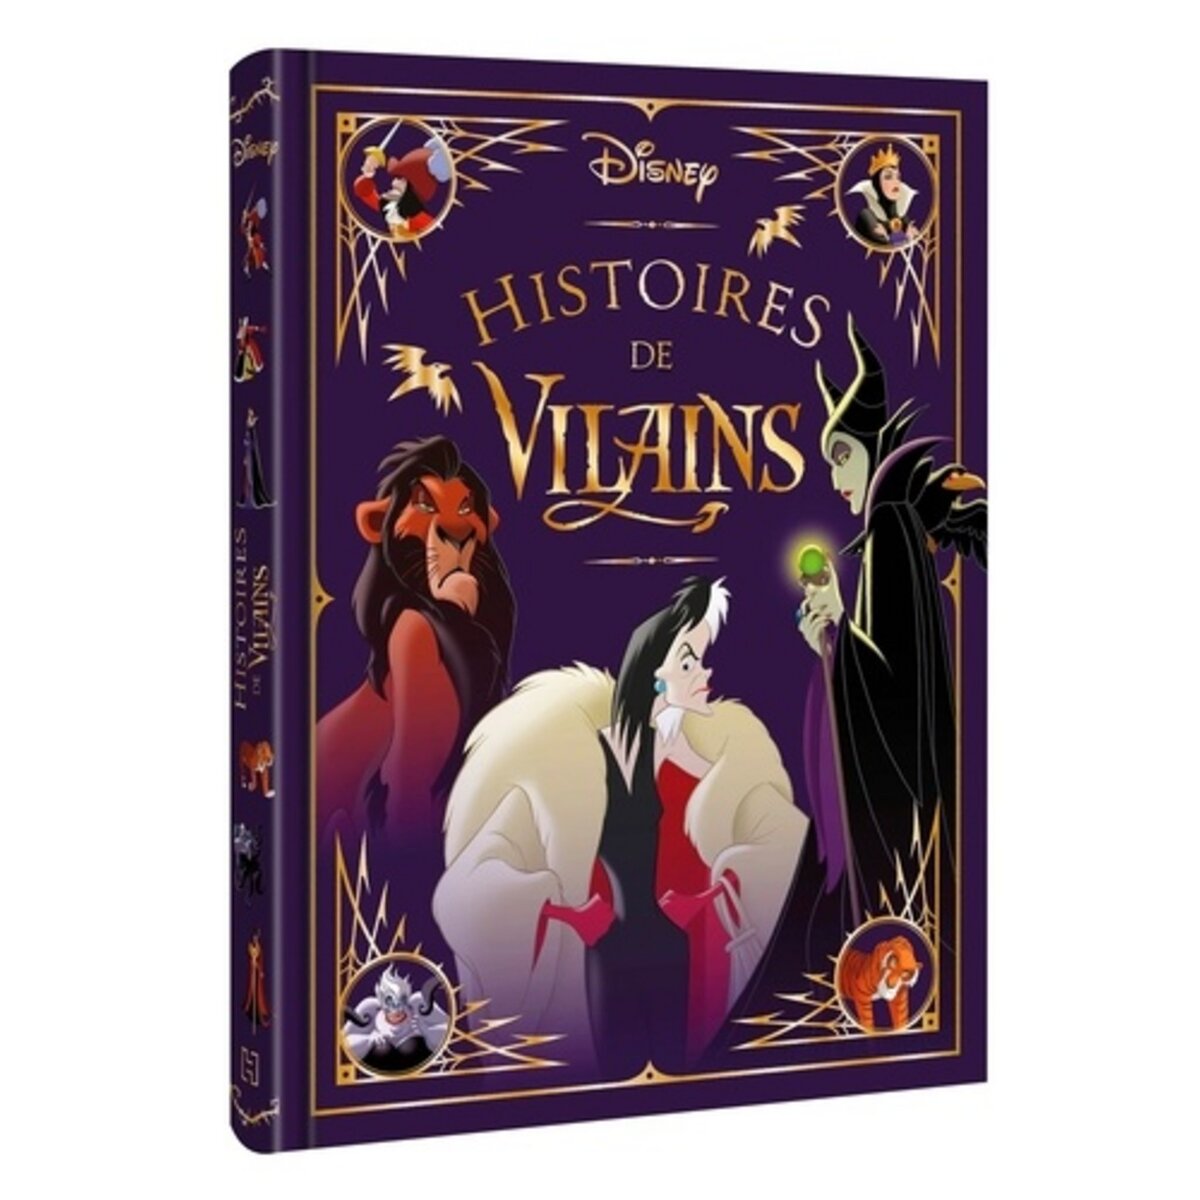  HISTOIRES DE VILAINS, Disney